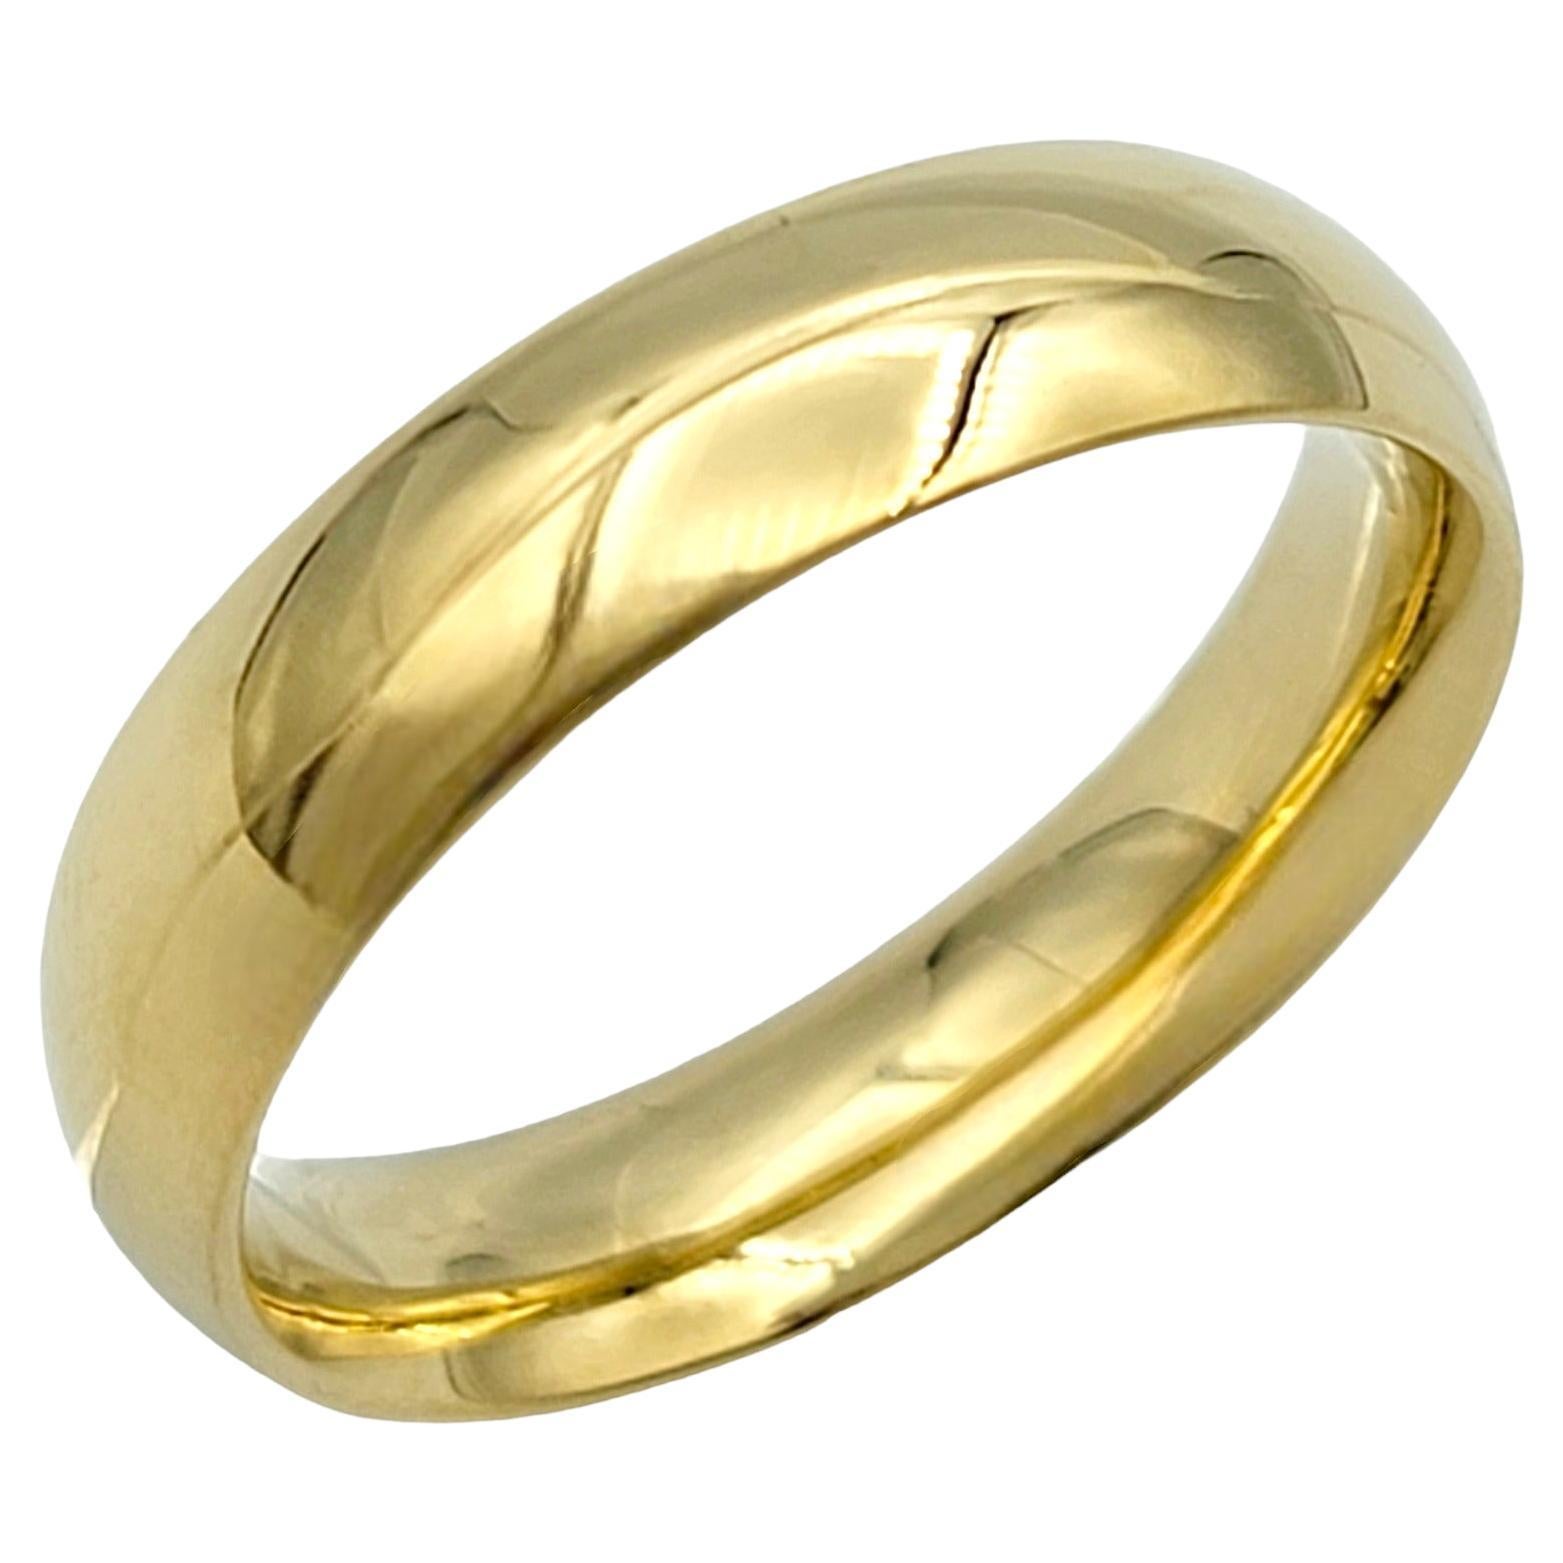 Ringgröße: 8

Dieser Bandring von Georg Jensen aus 18 Karat Gelbgold strahlt mit seiner Hochglanzpolitur zeitlose Eleganz aus. Die glatte Oberfläche des Rings reflektiert das Licht wunderschön und verleiht jedem Ensemble einen Hauch von Luxus. Sein